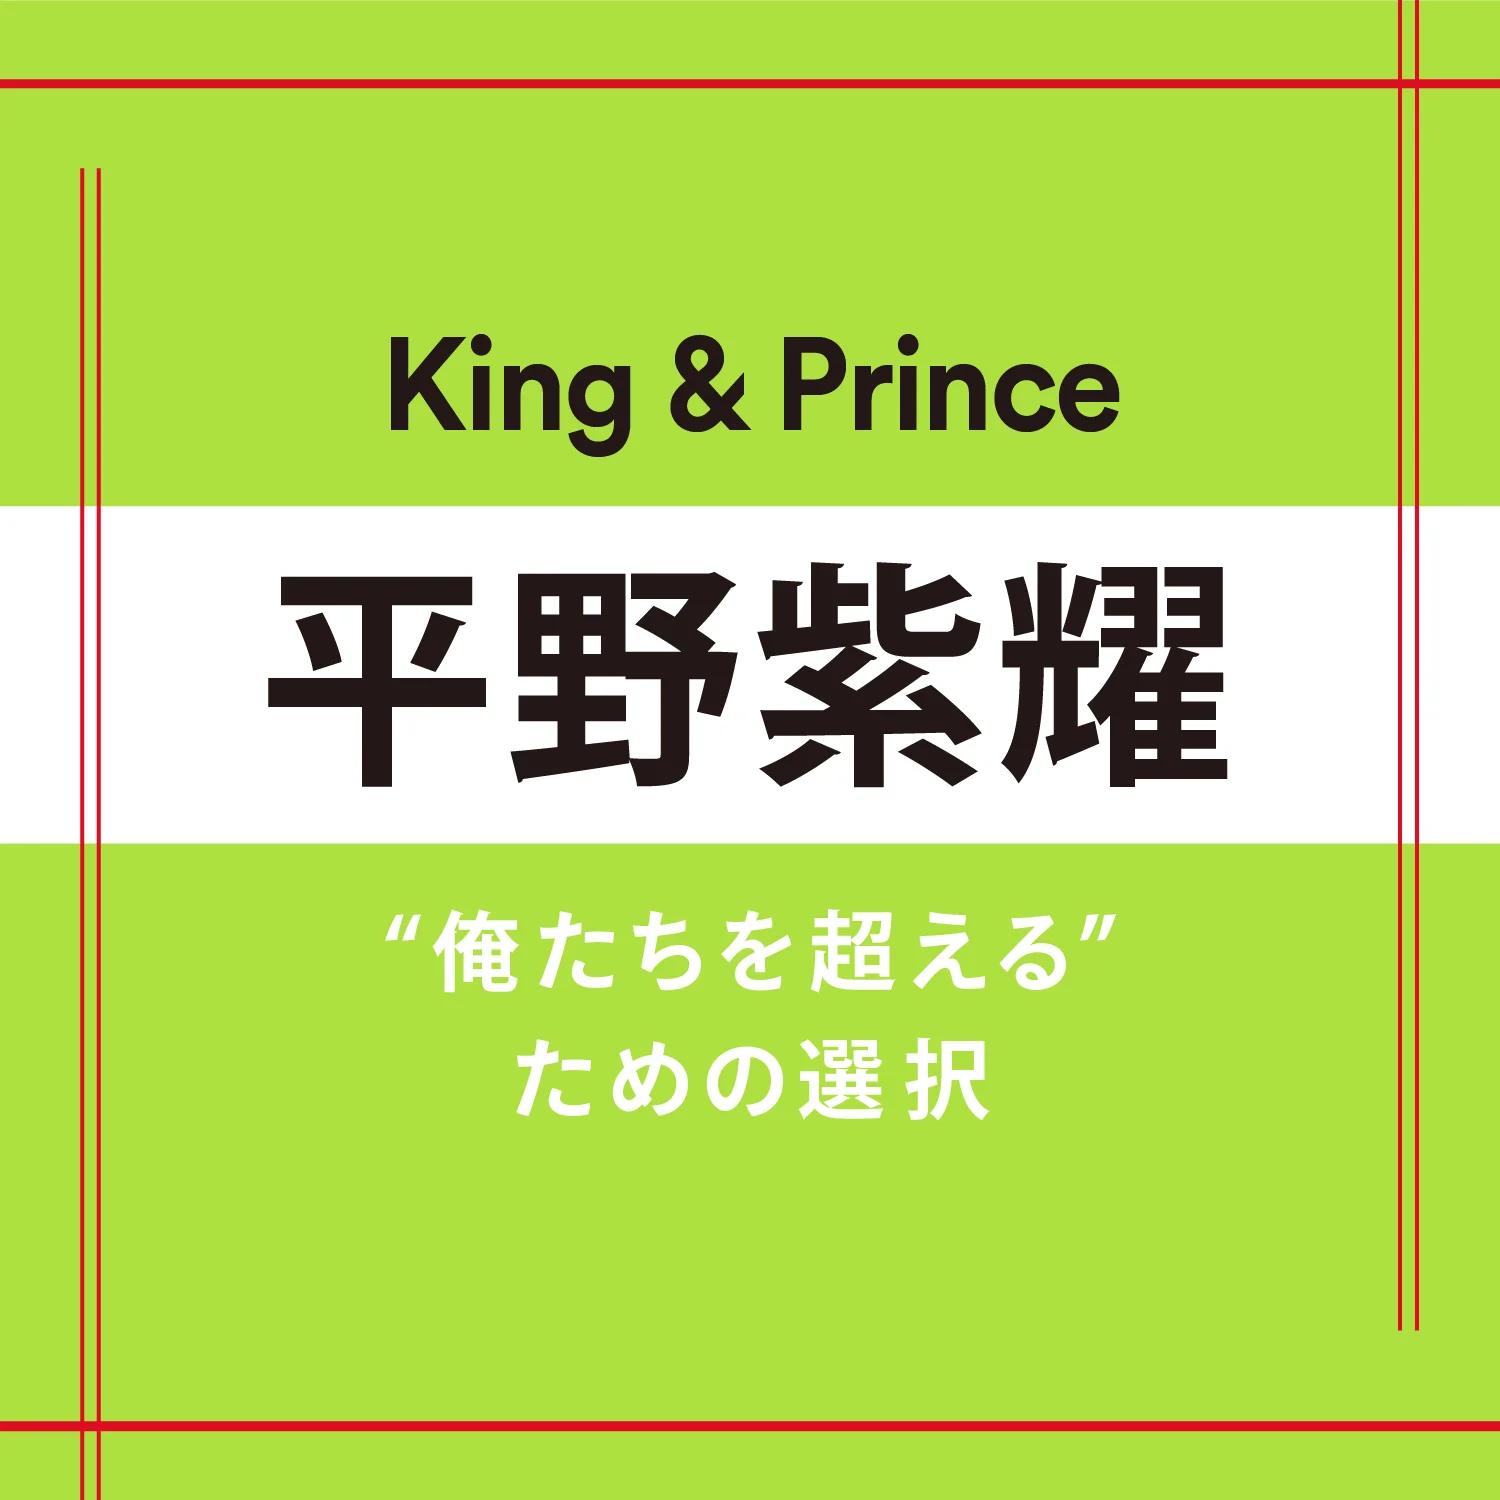 【King &amp; Prince】平野紫耀さん「選ぶ時は迷わないタイプ。大事なのは“シンプルな自分”でいること」 